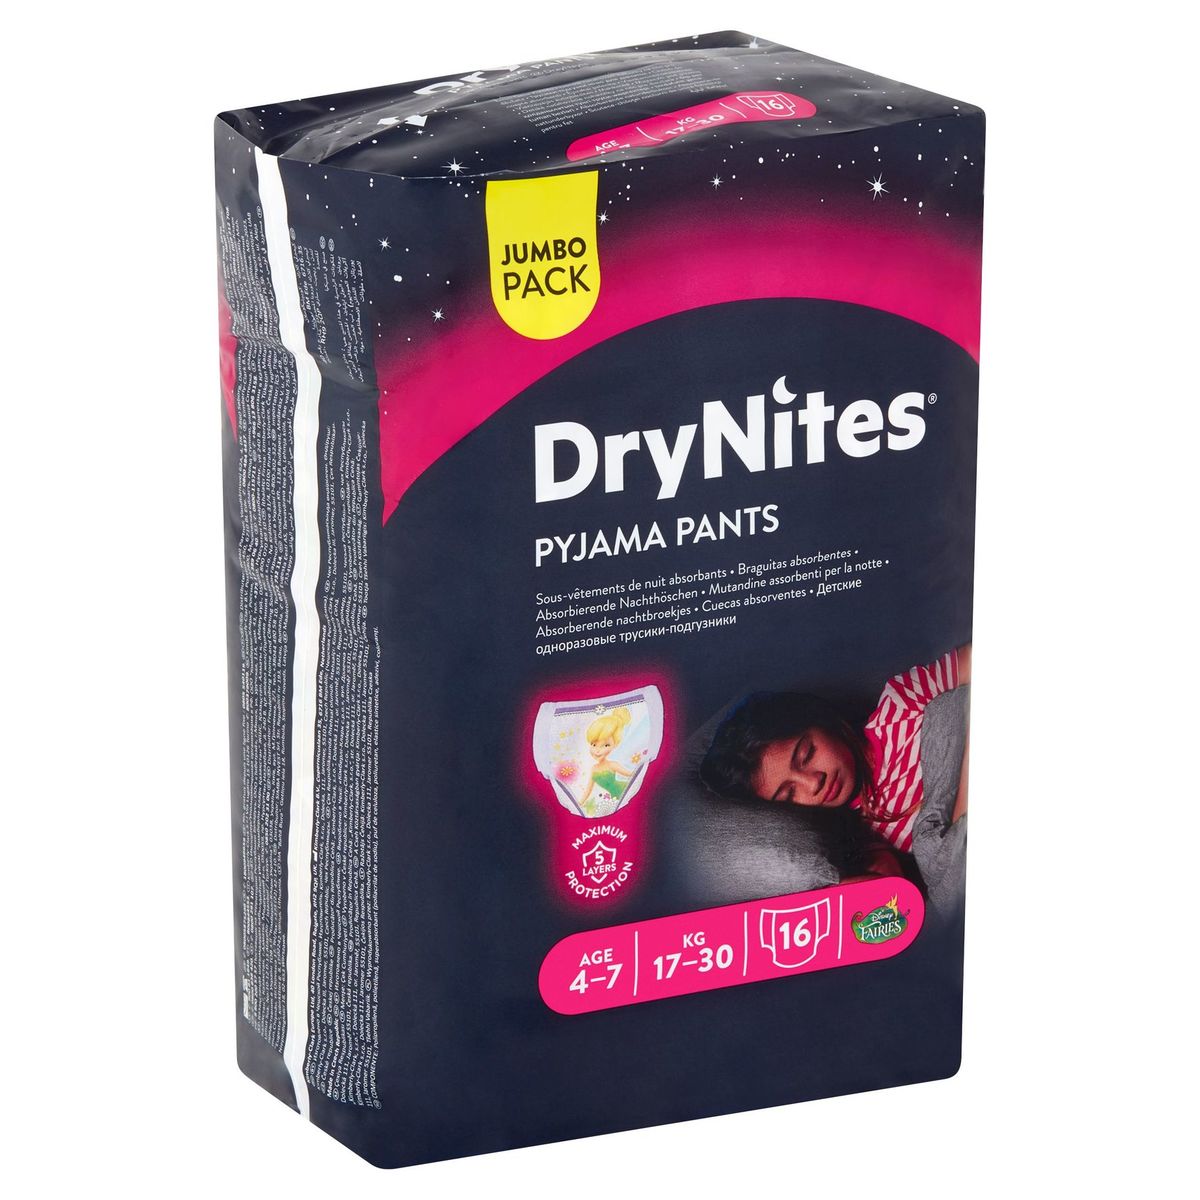 DryNites Pyjama Pants Girl 4-7 Age 17-30 kg Jumbo Pack 16 Pièces